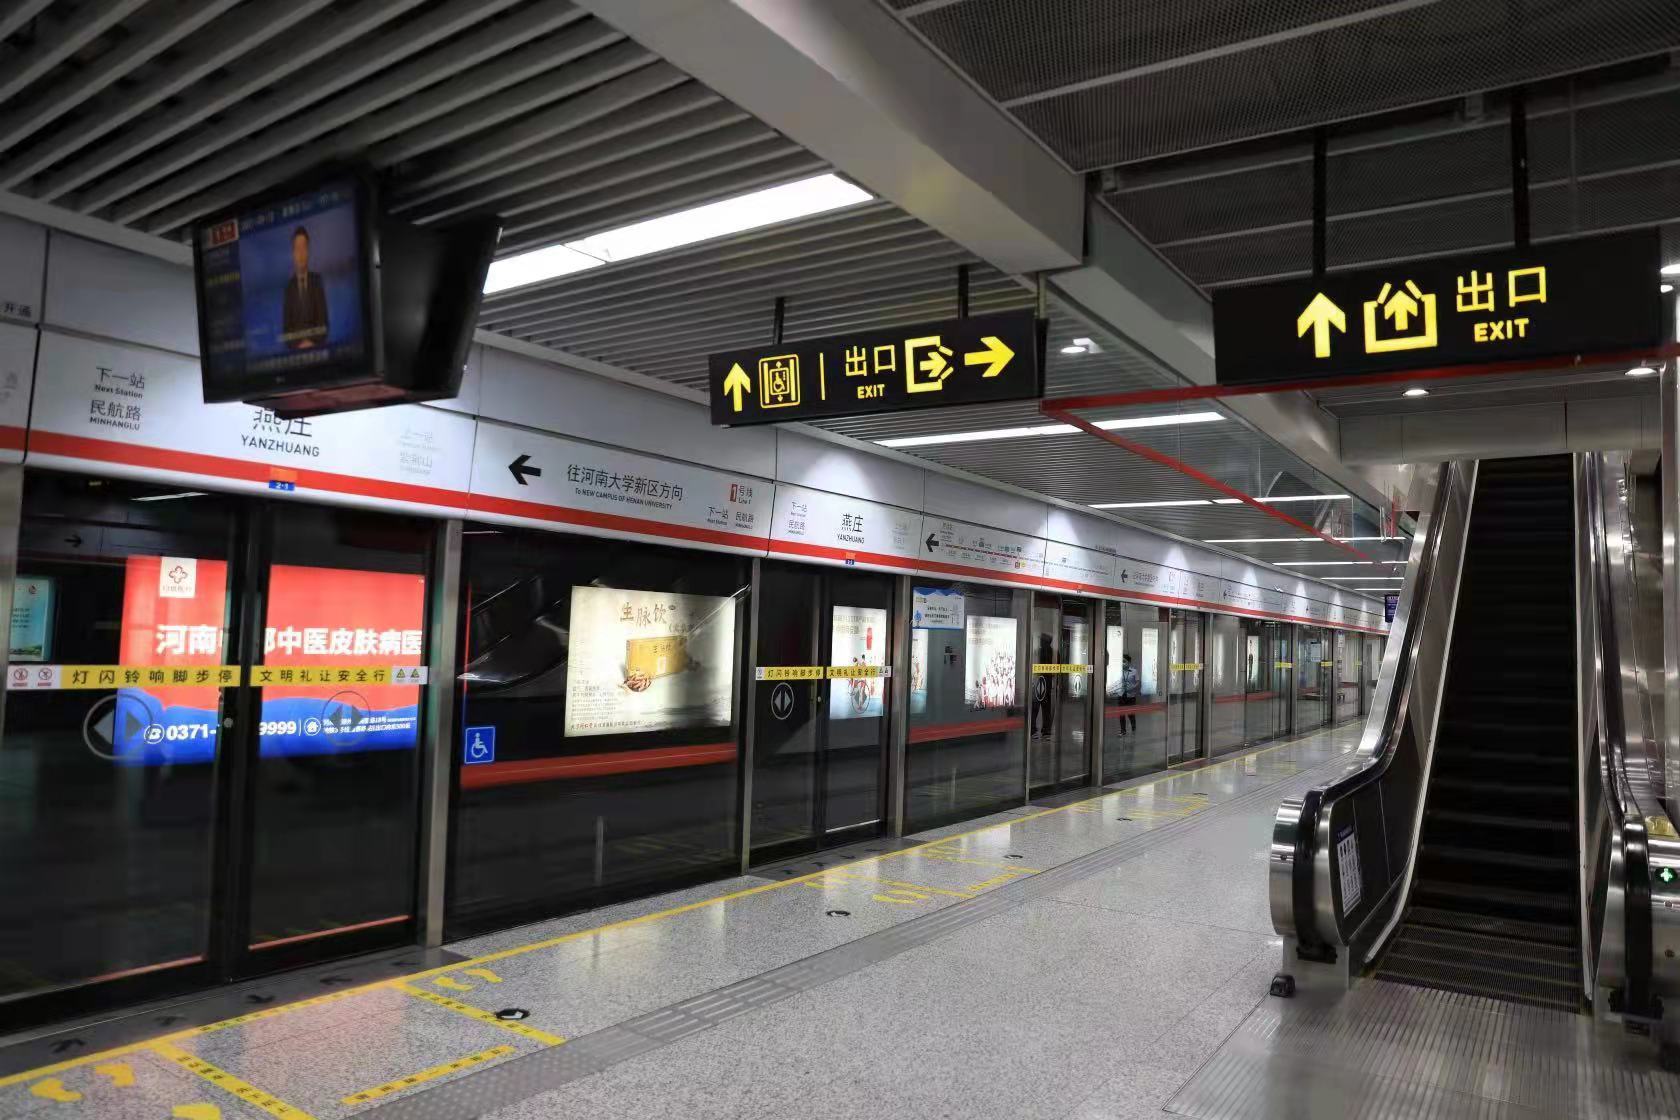 图集直击郑州地铁重启首日